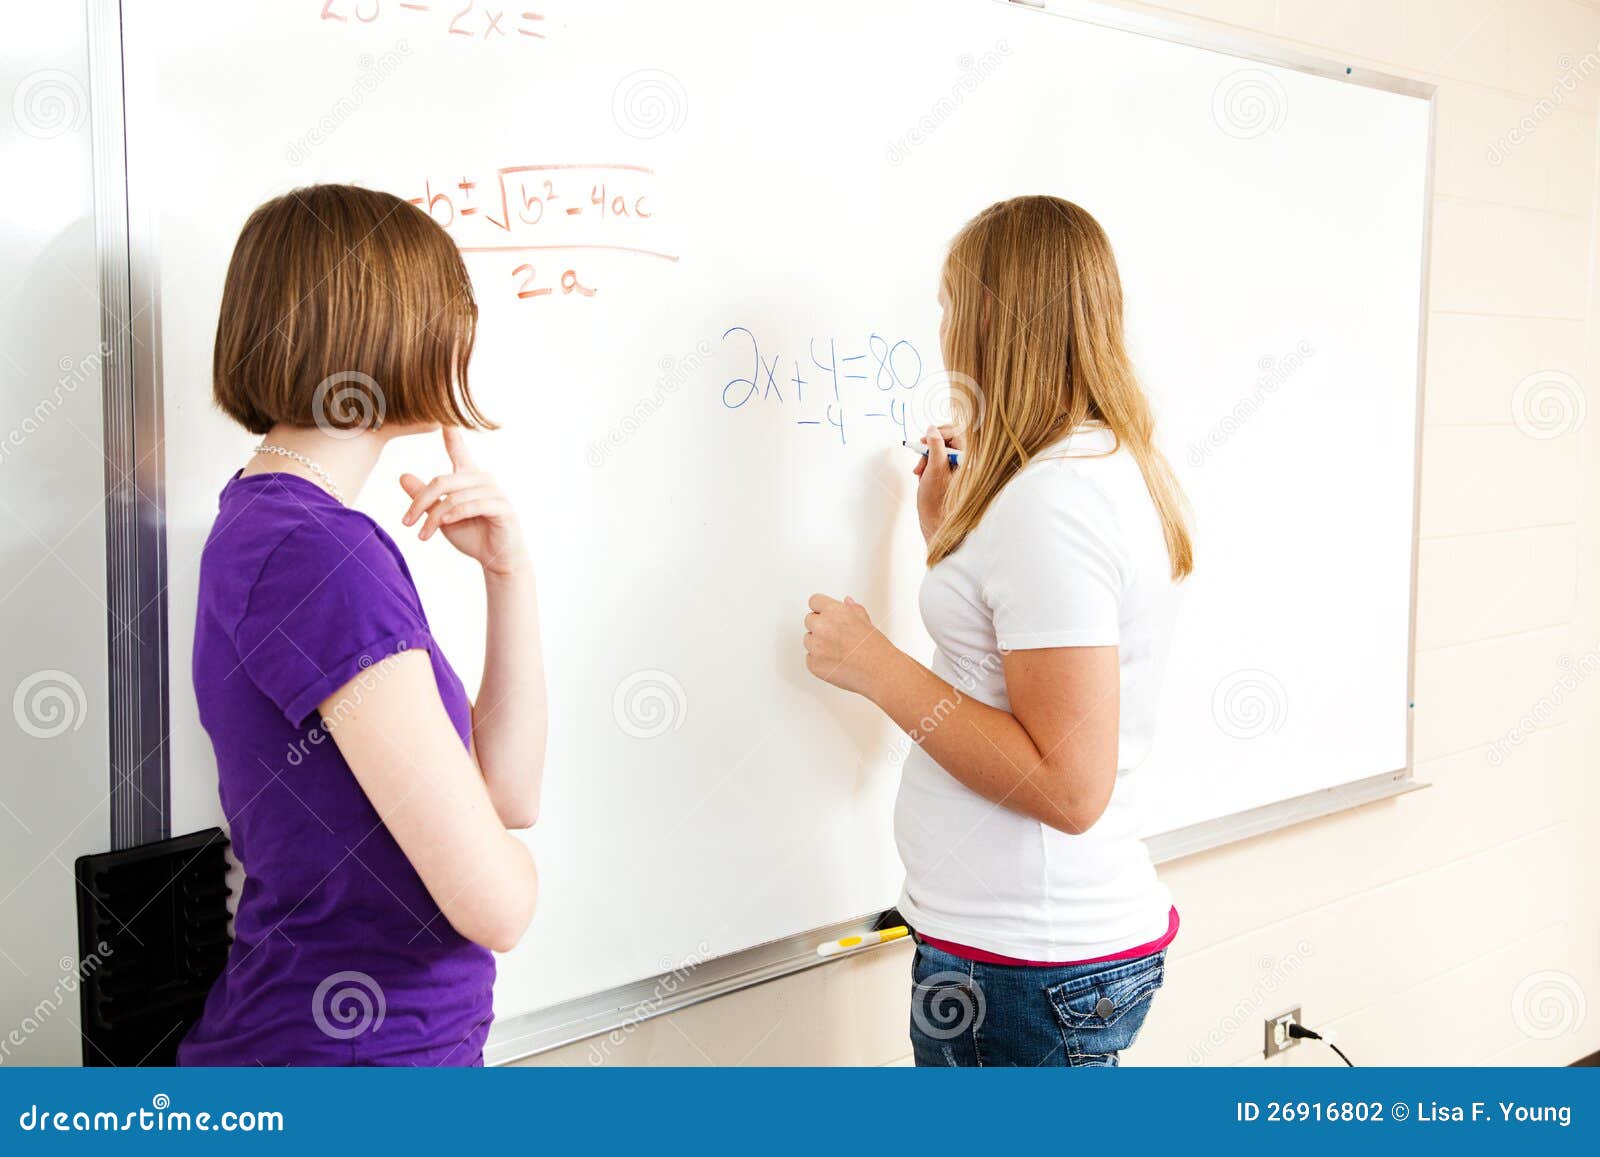 two girls in algebra class